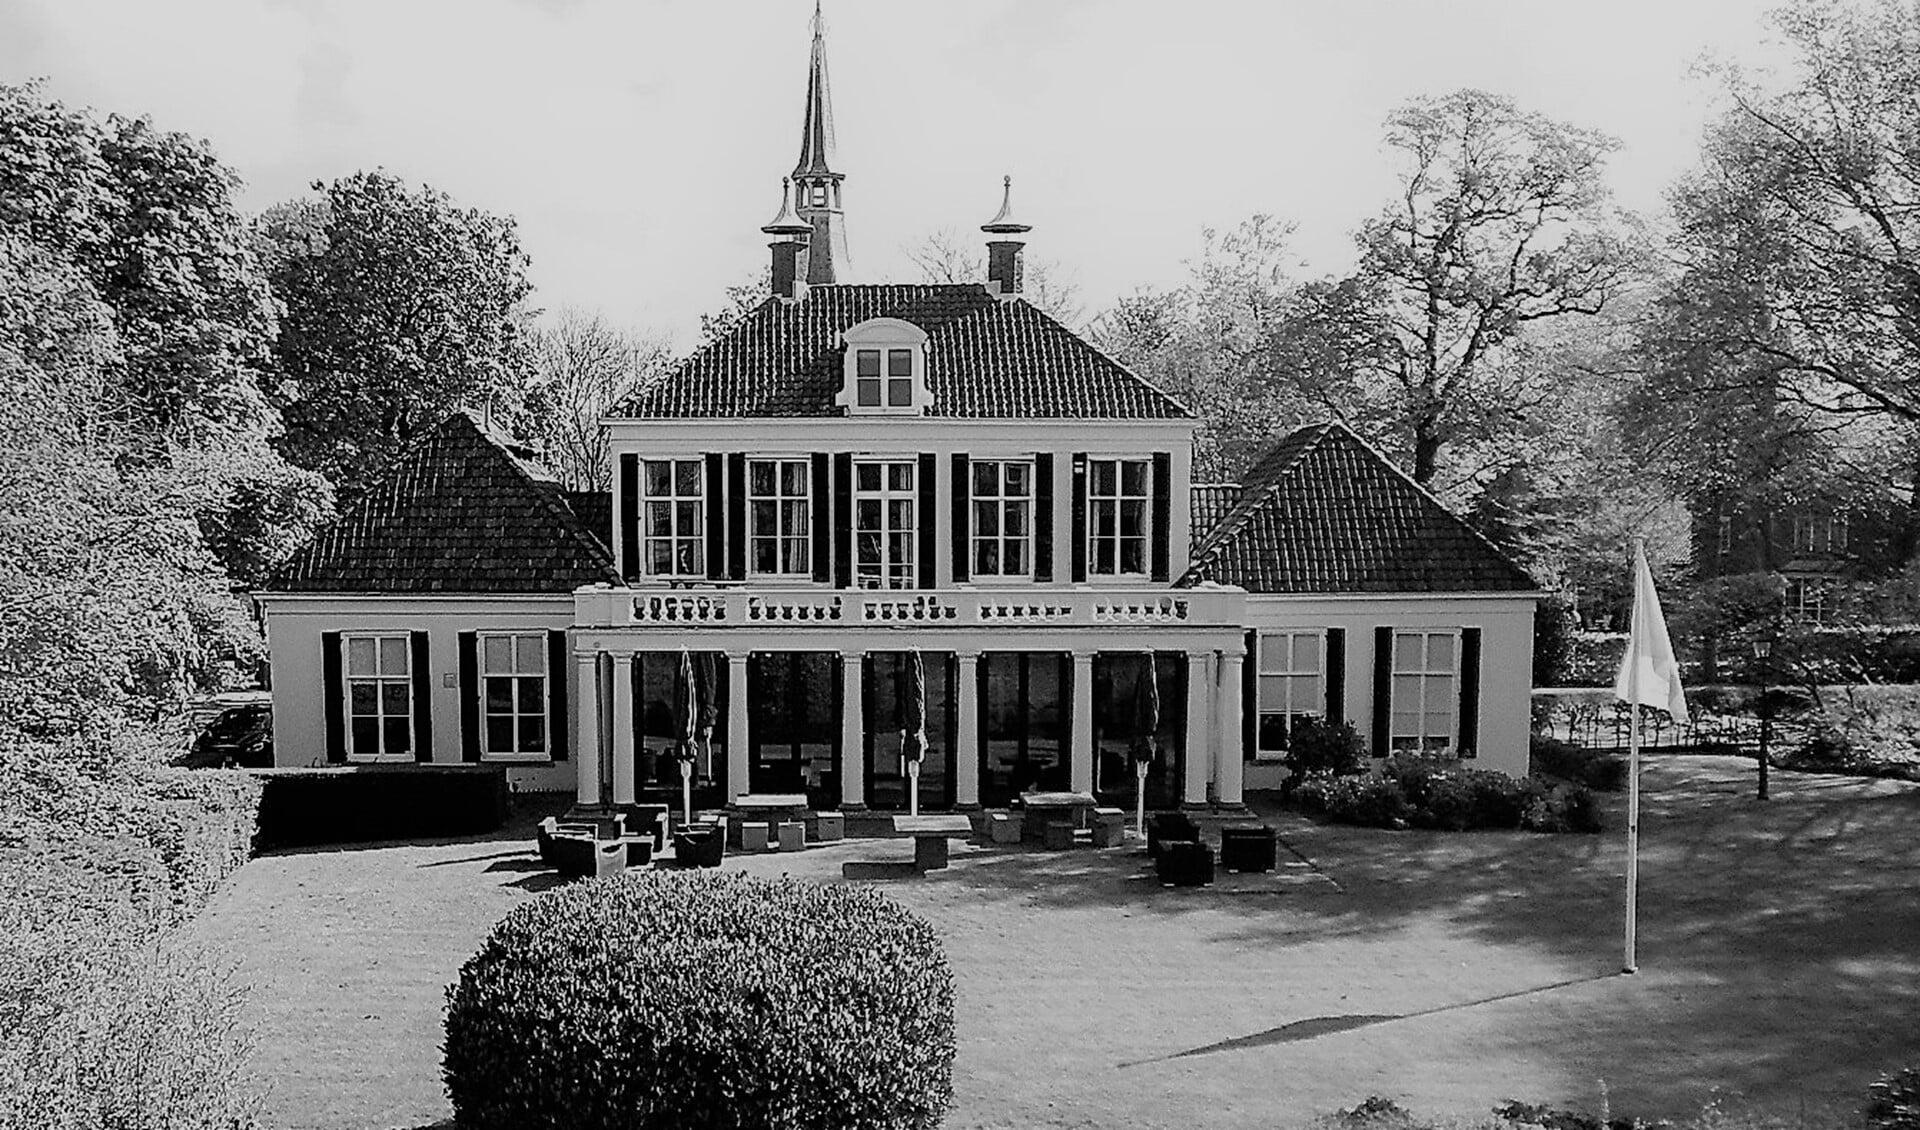 Het buitengoed, landgoed of ook wel kasteel De Werve in Voorburg heden ten dage.